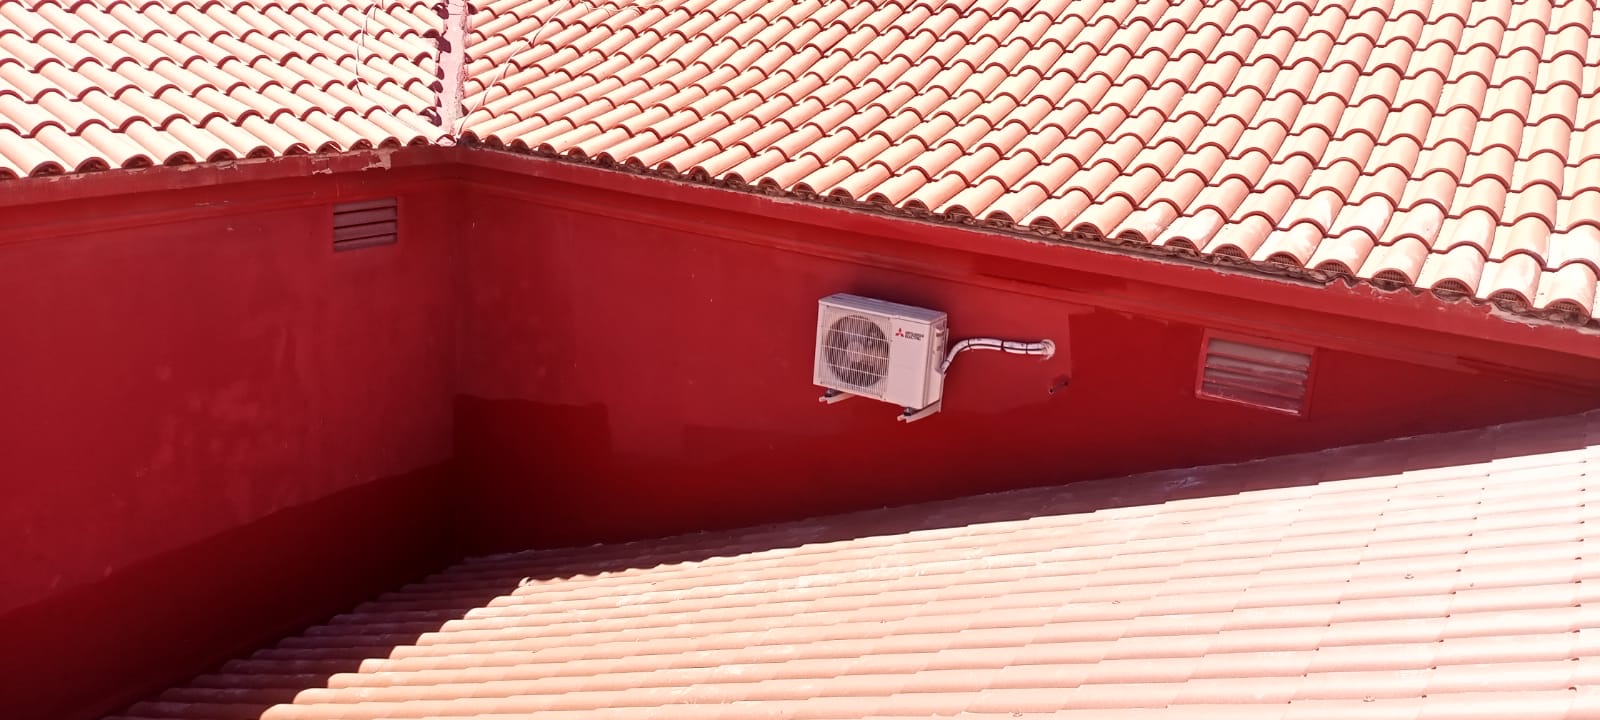 Vista de un tejado de tejas rojas con una unidad de aire acondicionado en una pared roja, ilustrando las labores de modernización y mantenimiento en el contexto de un proyecto de rehabilitación de edificios para mejorar la funcionalidad y eficiencia energética sin alterar su estética tradicional.